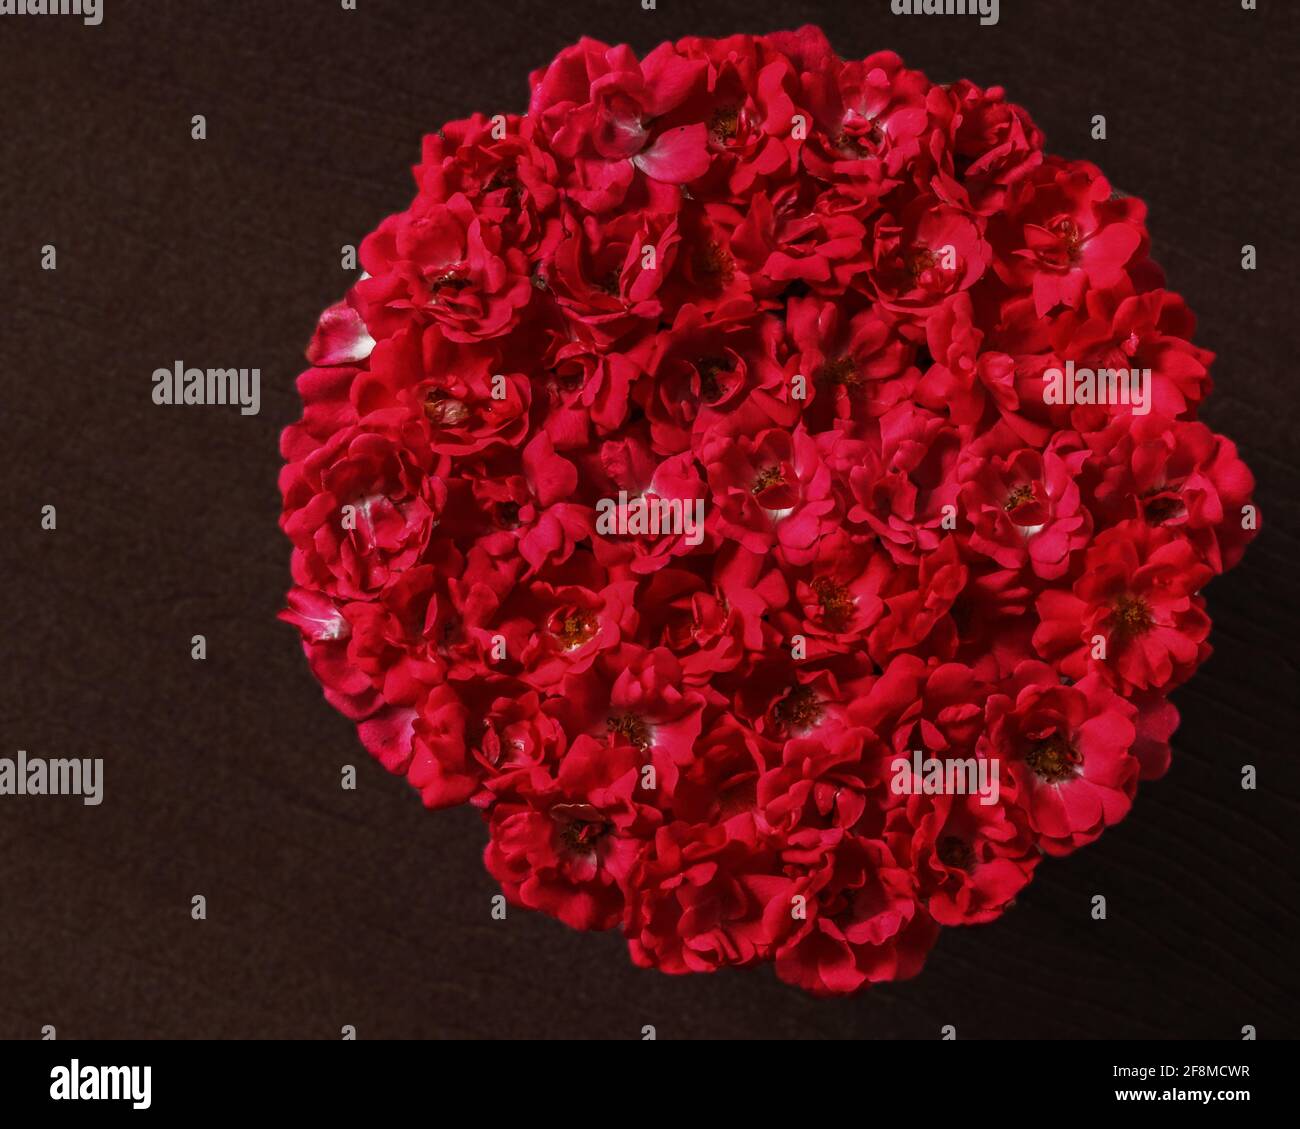 Rote Rosen zu einem kreisförmigen Muster mit dunklem Hintergrund versammelt Stockfoto